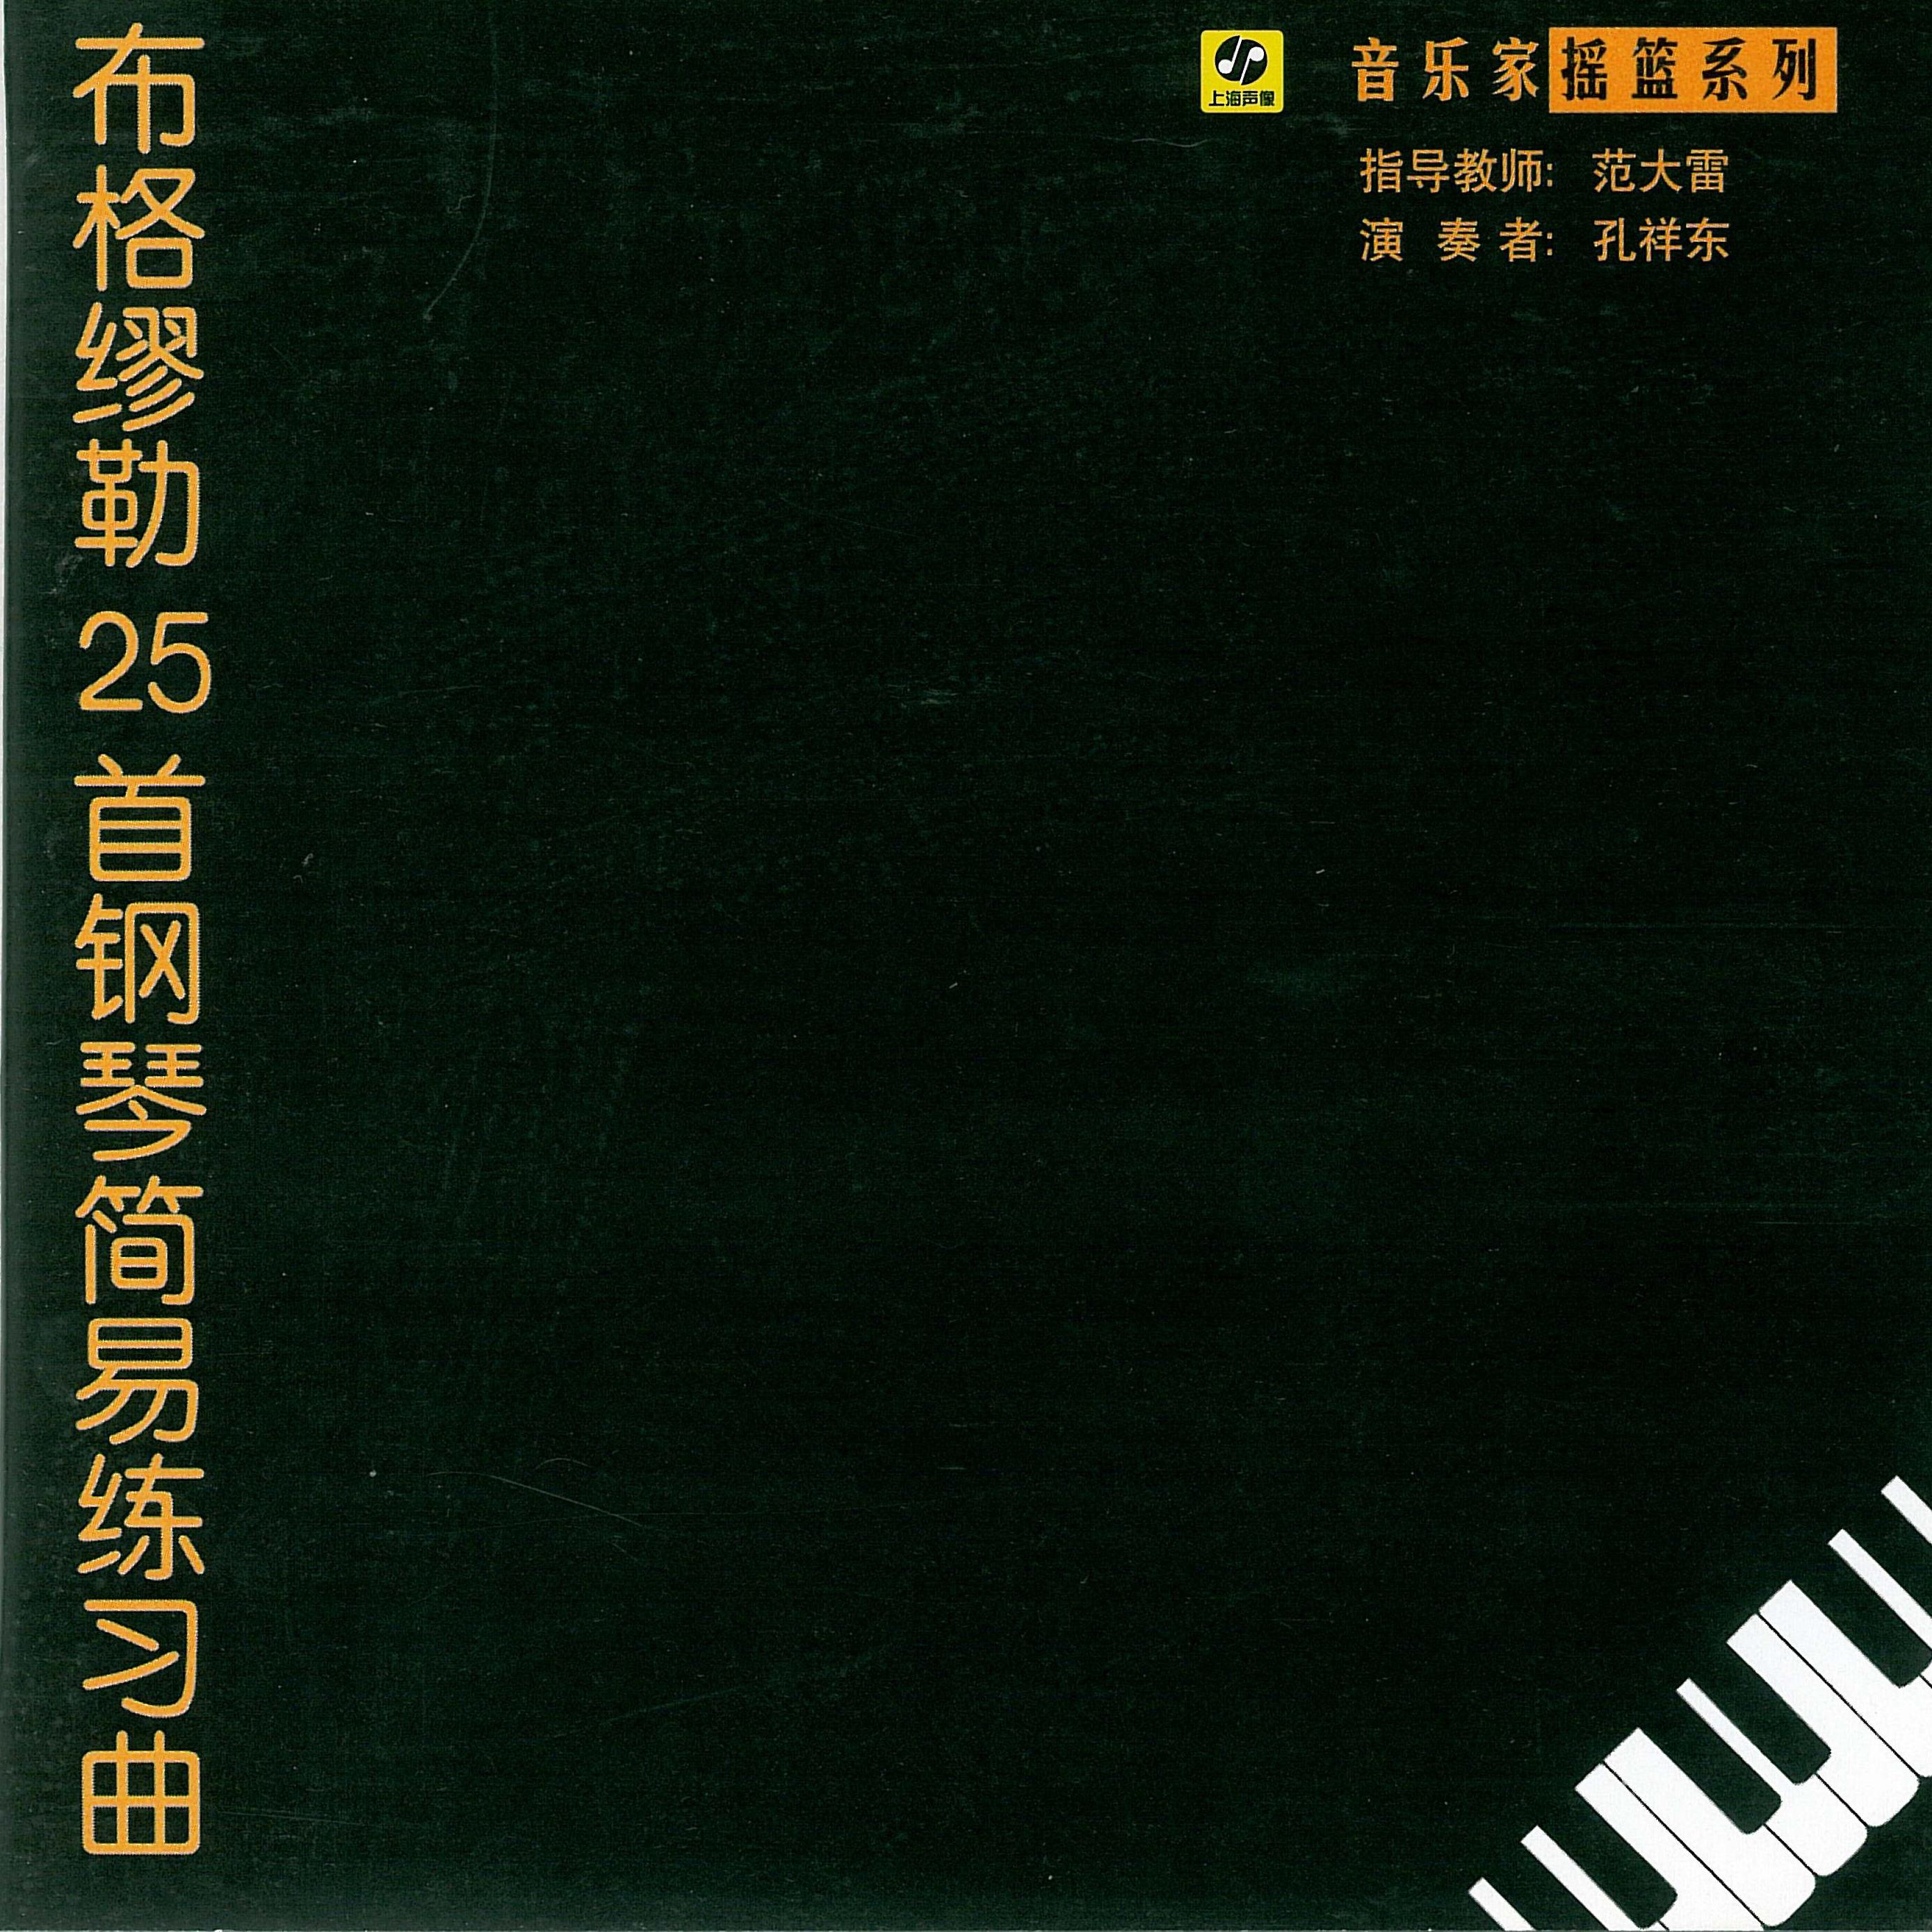 布格缪勒25首钢琴简易练习曲专辑